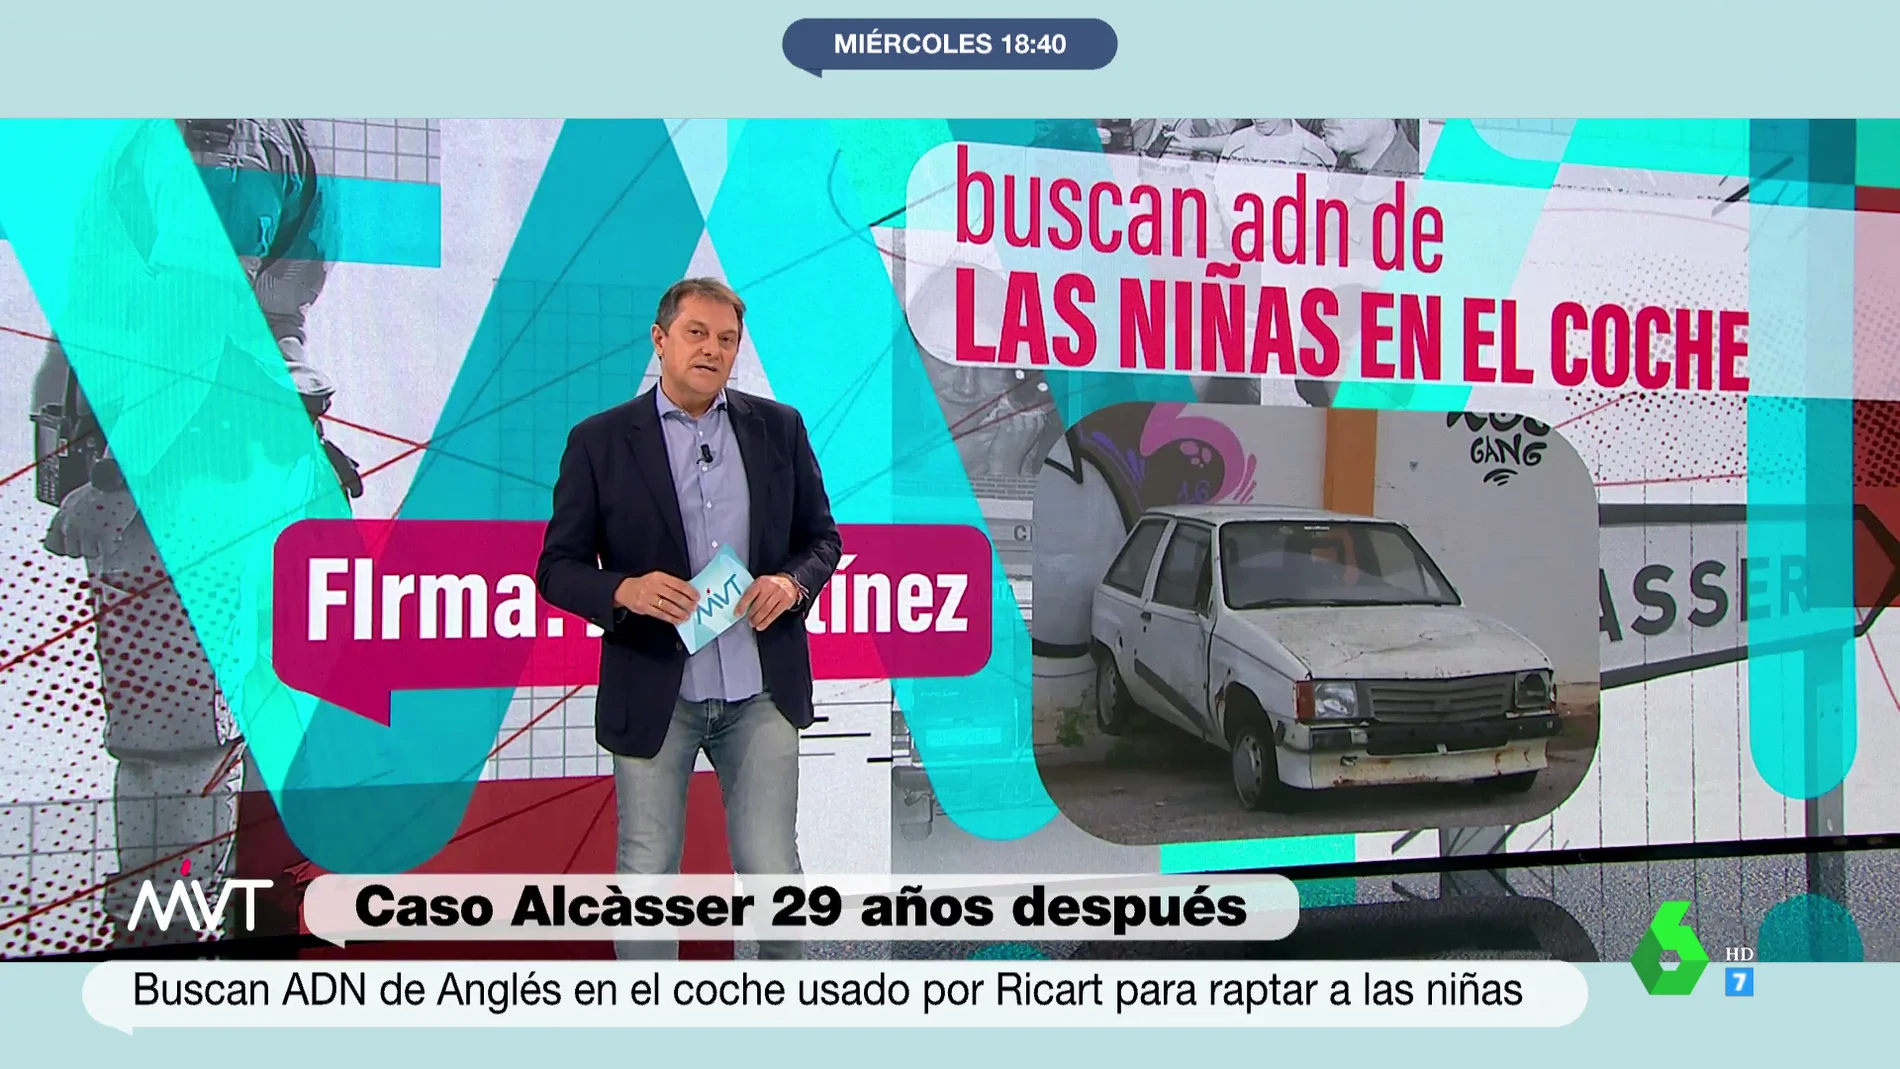 La Guardia Civil vuelve al coche del caso 'Alcasser': analizan los restos biológicos del vehículo en el que se trasladó a las niñas 